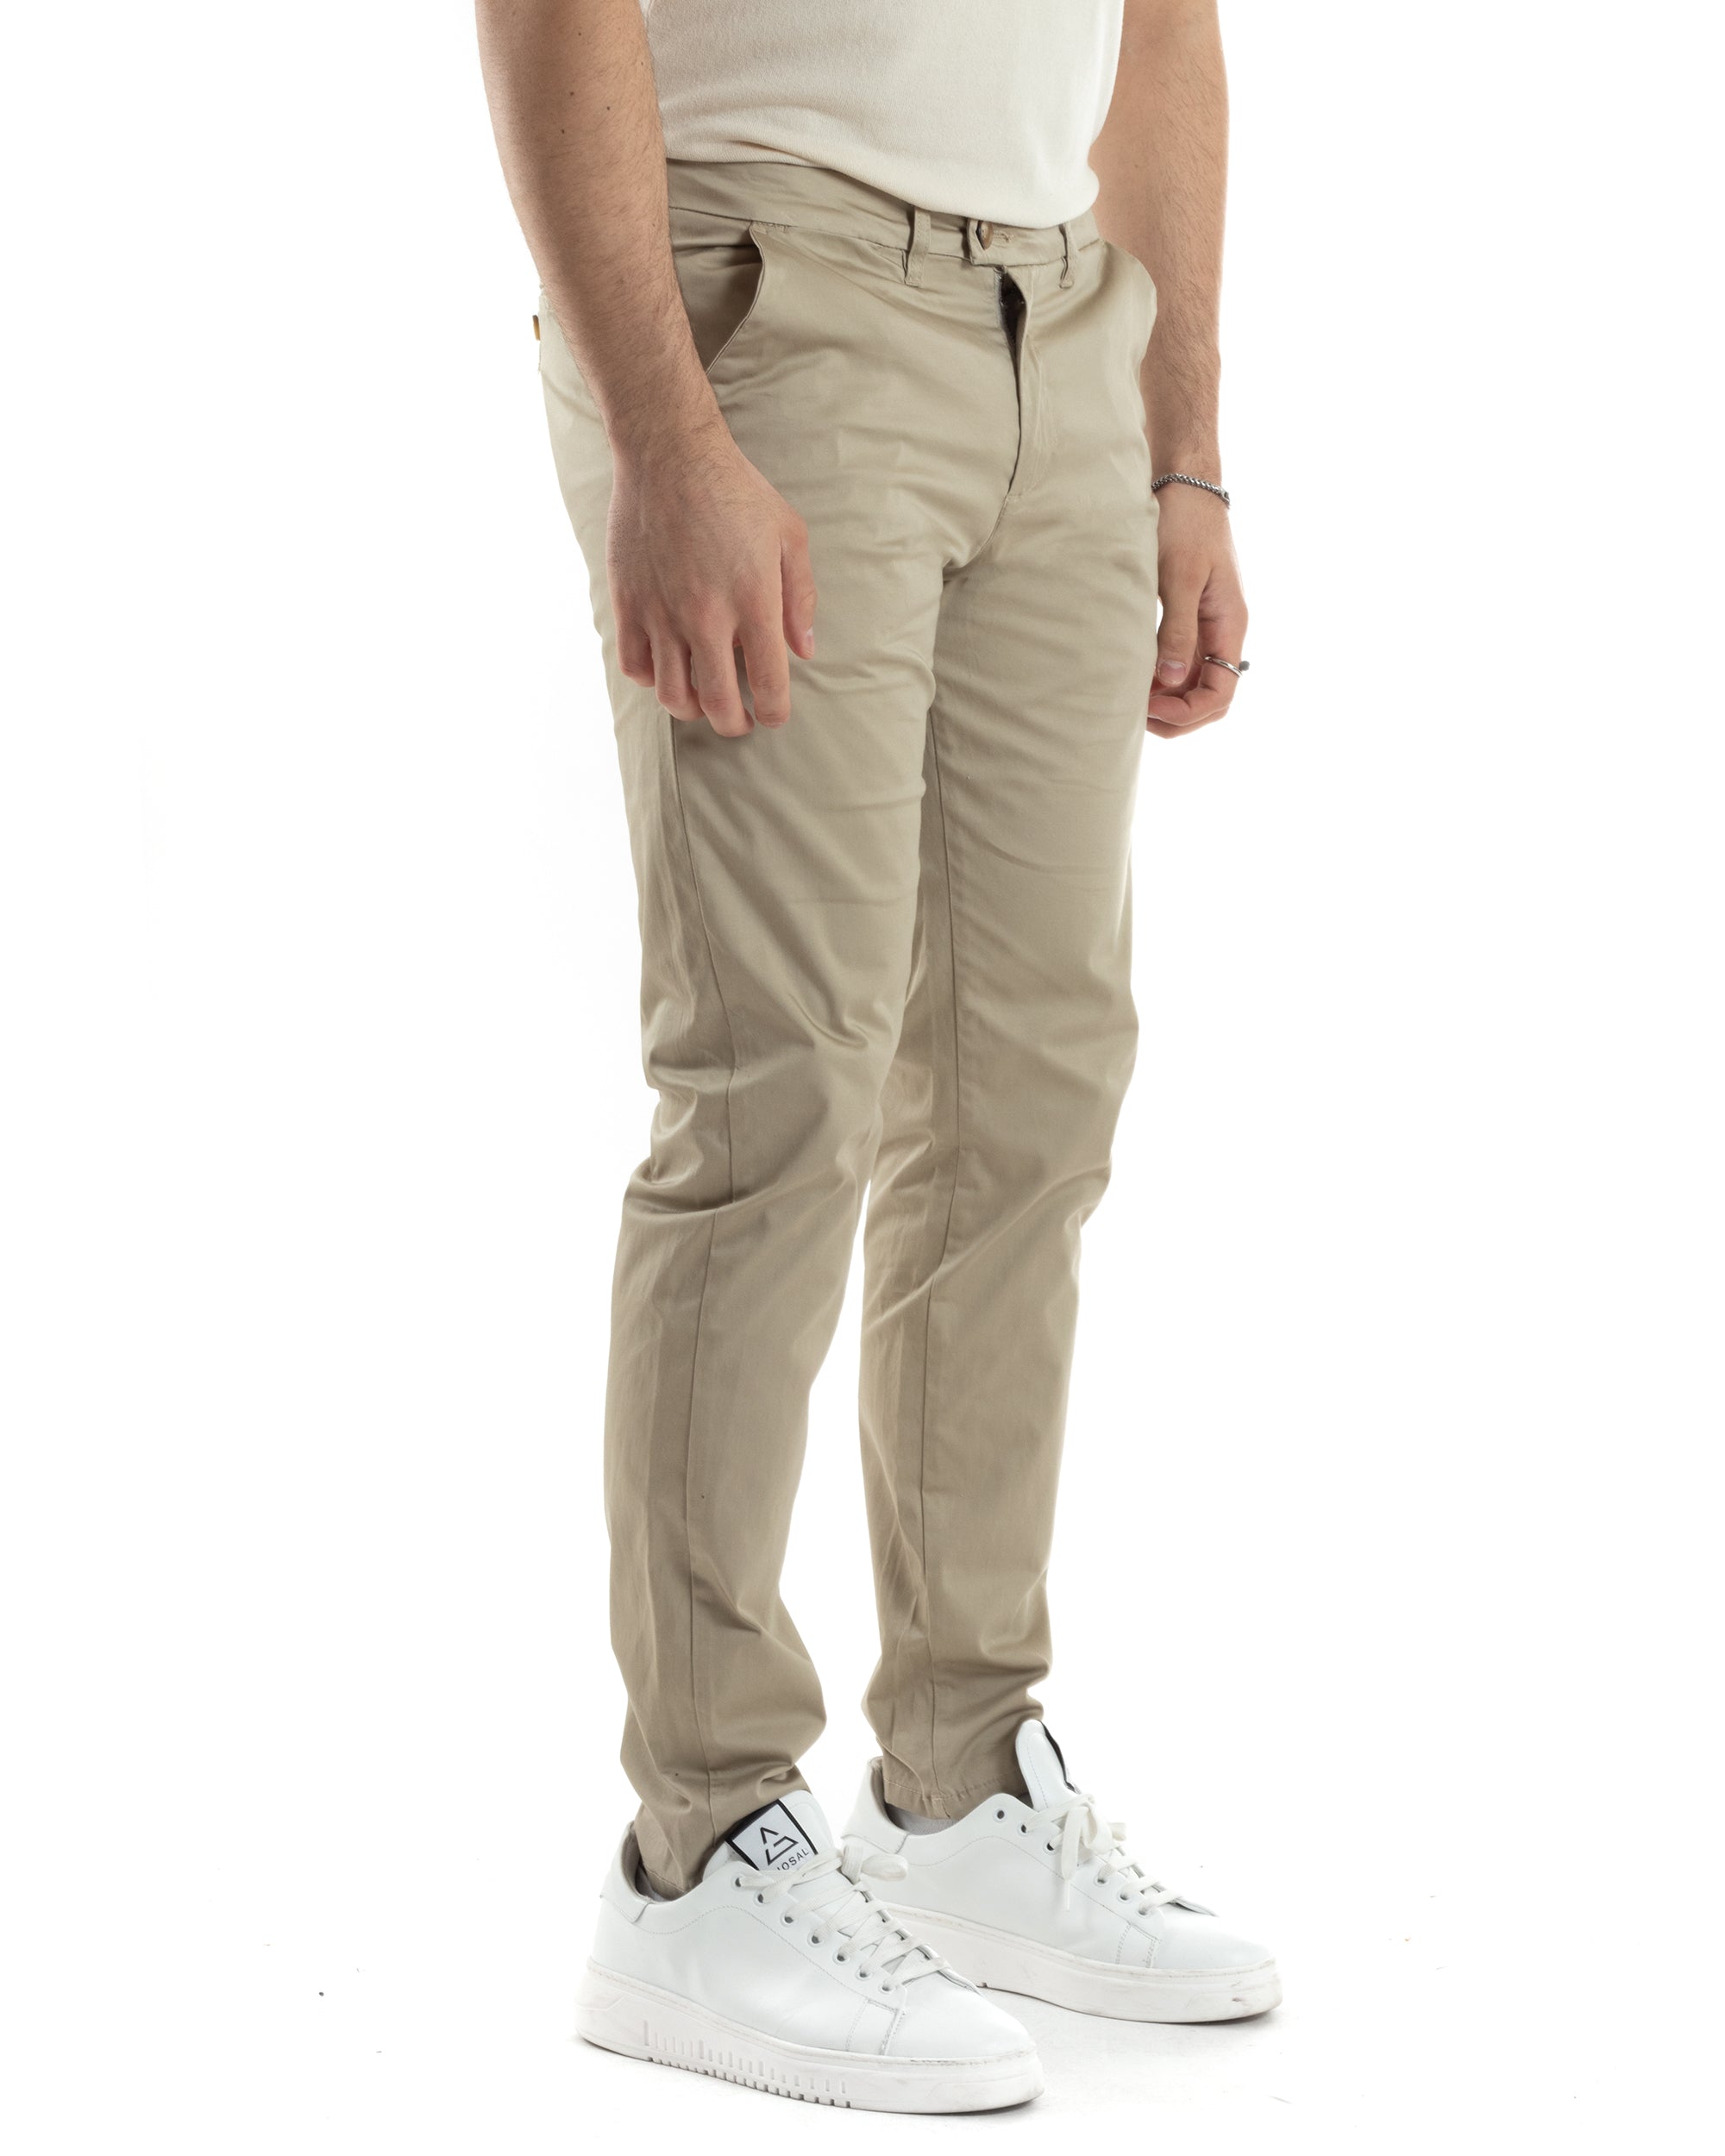 Pantaloni Uomo Cotone Raso Tasca America Slim Fit Abbottonatura Allungata Tinta Unita Beige GIOSAL-P6060A